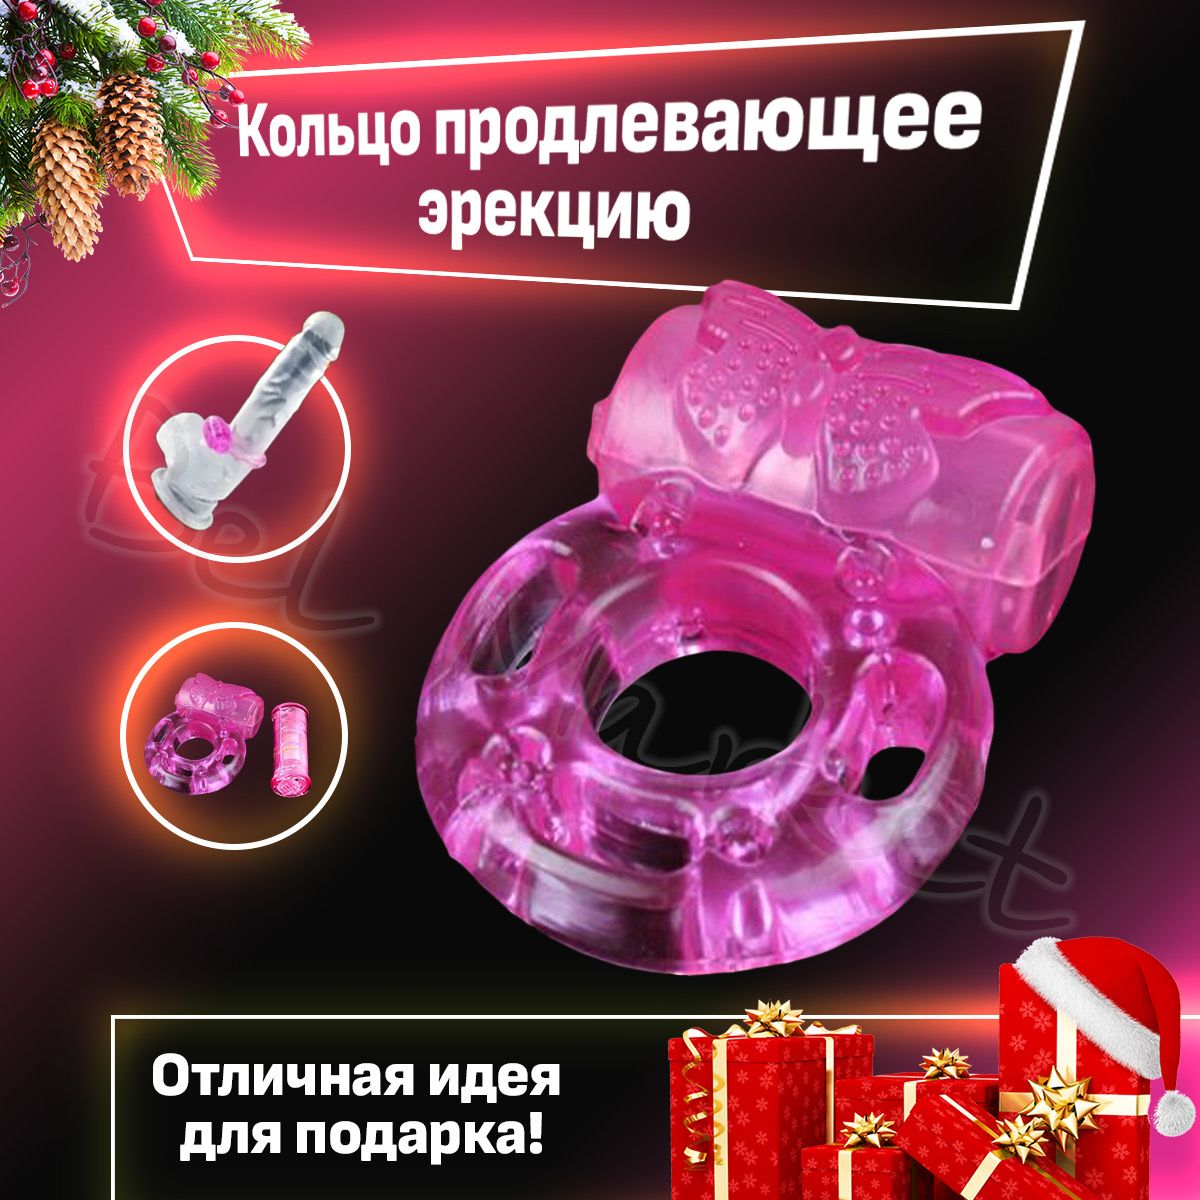 Купить интимный пирсинг. Пирсинг серьга в сосок, гениталии. Интернет магазин «Caflon» (Украина)